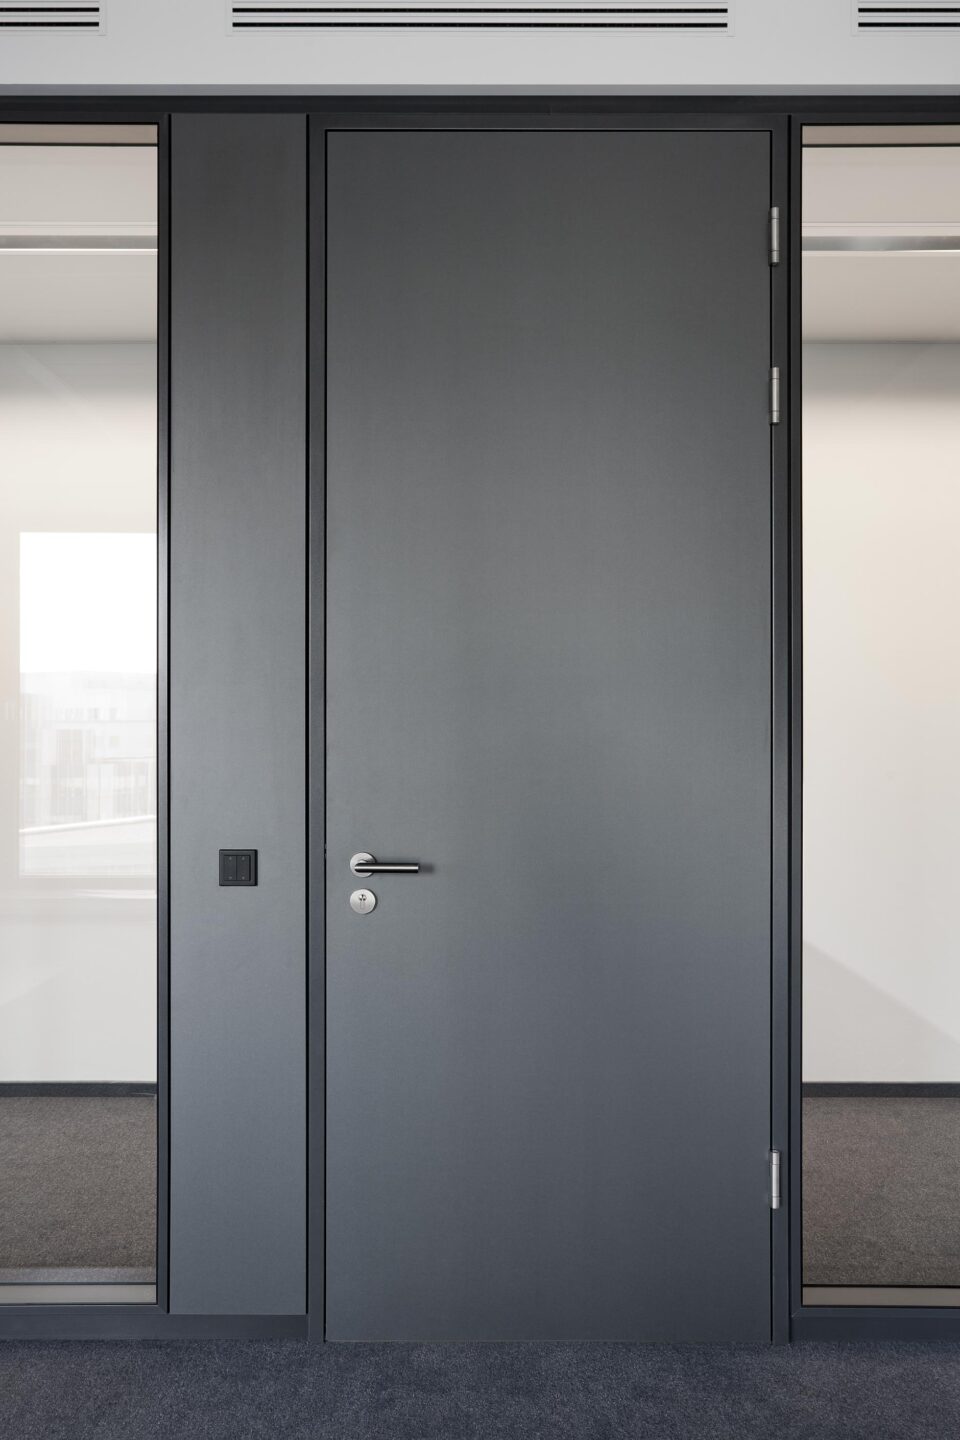 Deutsche Börse headquarters │ system walls at feco │ LEED-compliant wooden doors